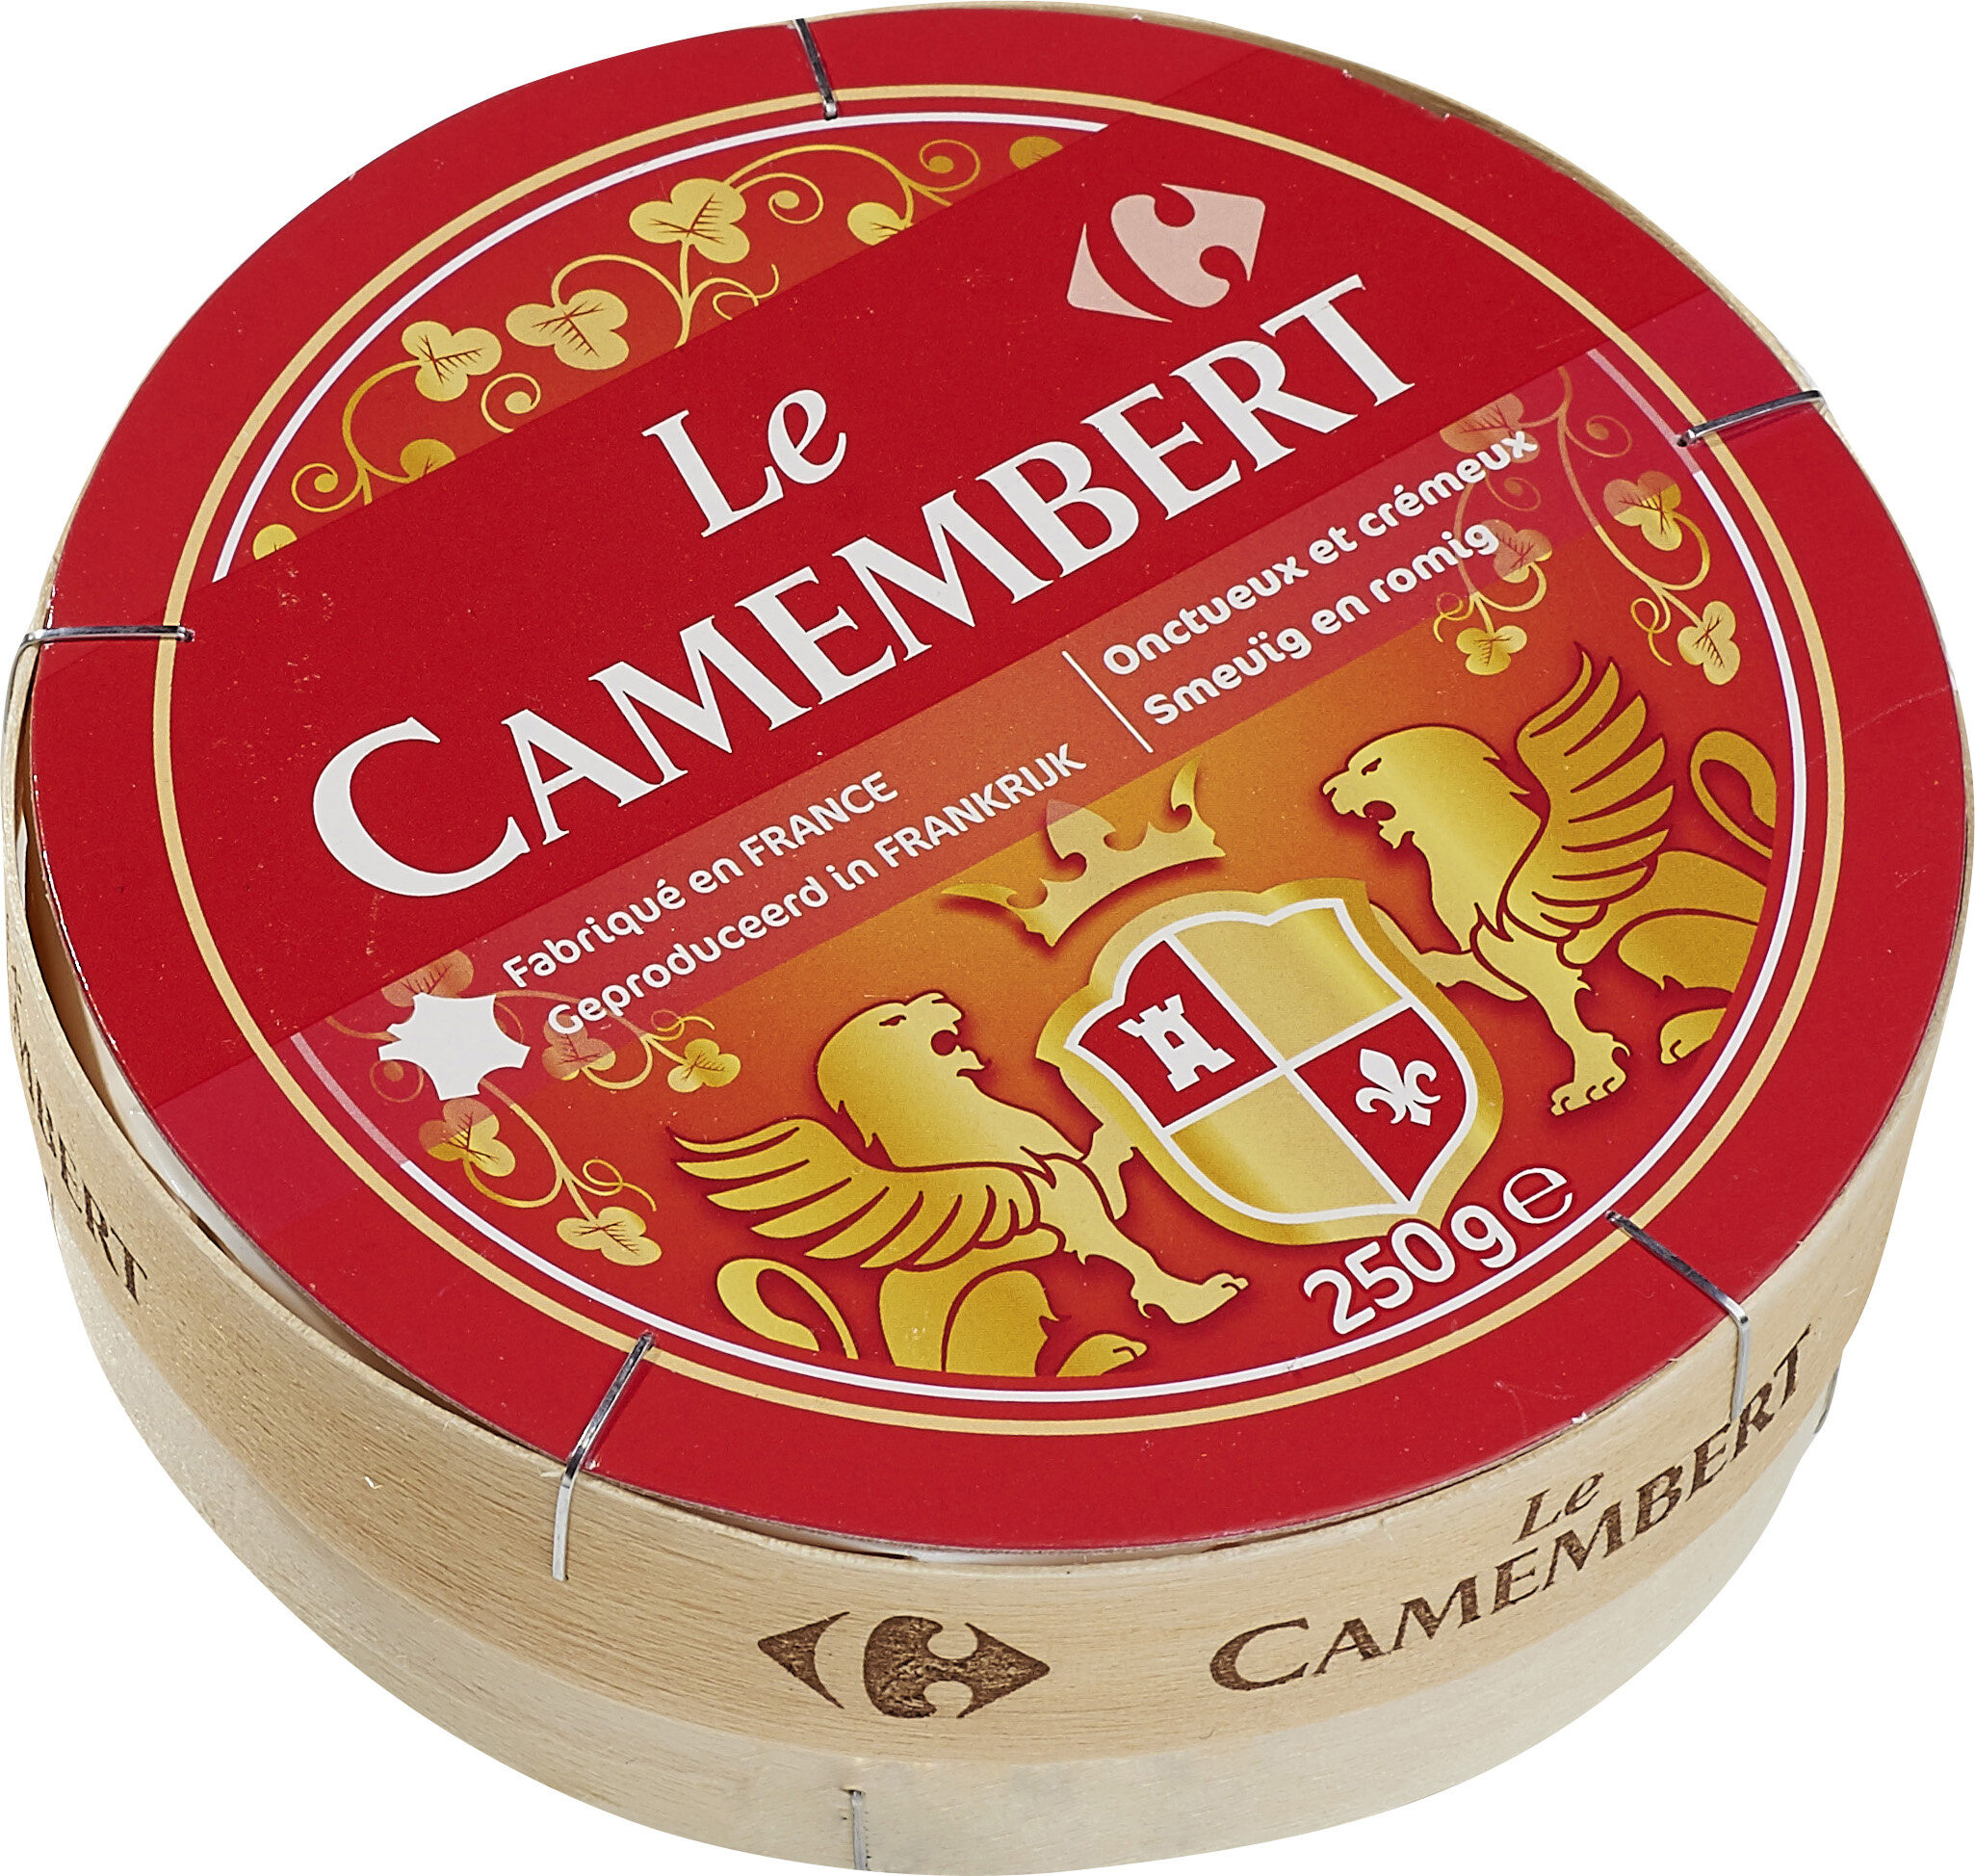 Le Camembert - Fromage à patte molle au lait pasteurisé - Prodotto - fr